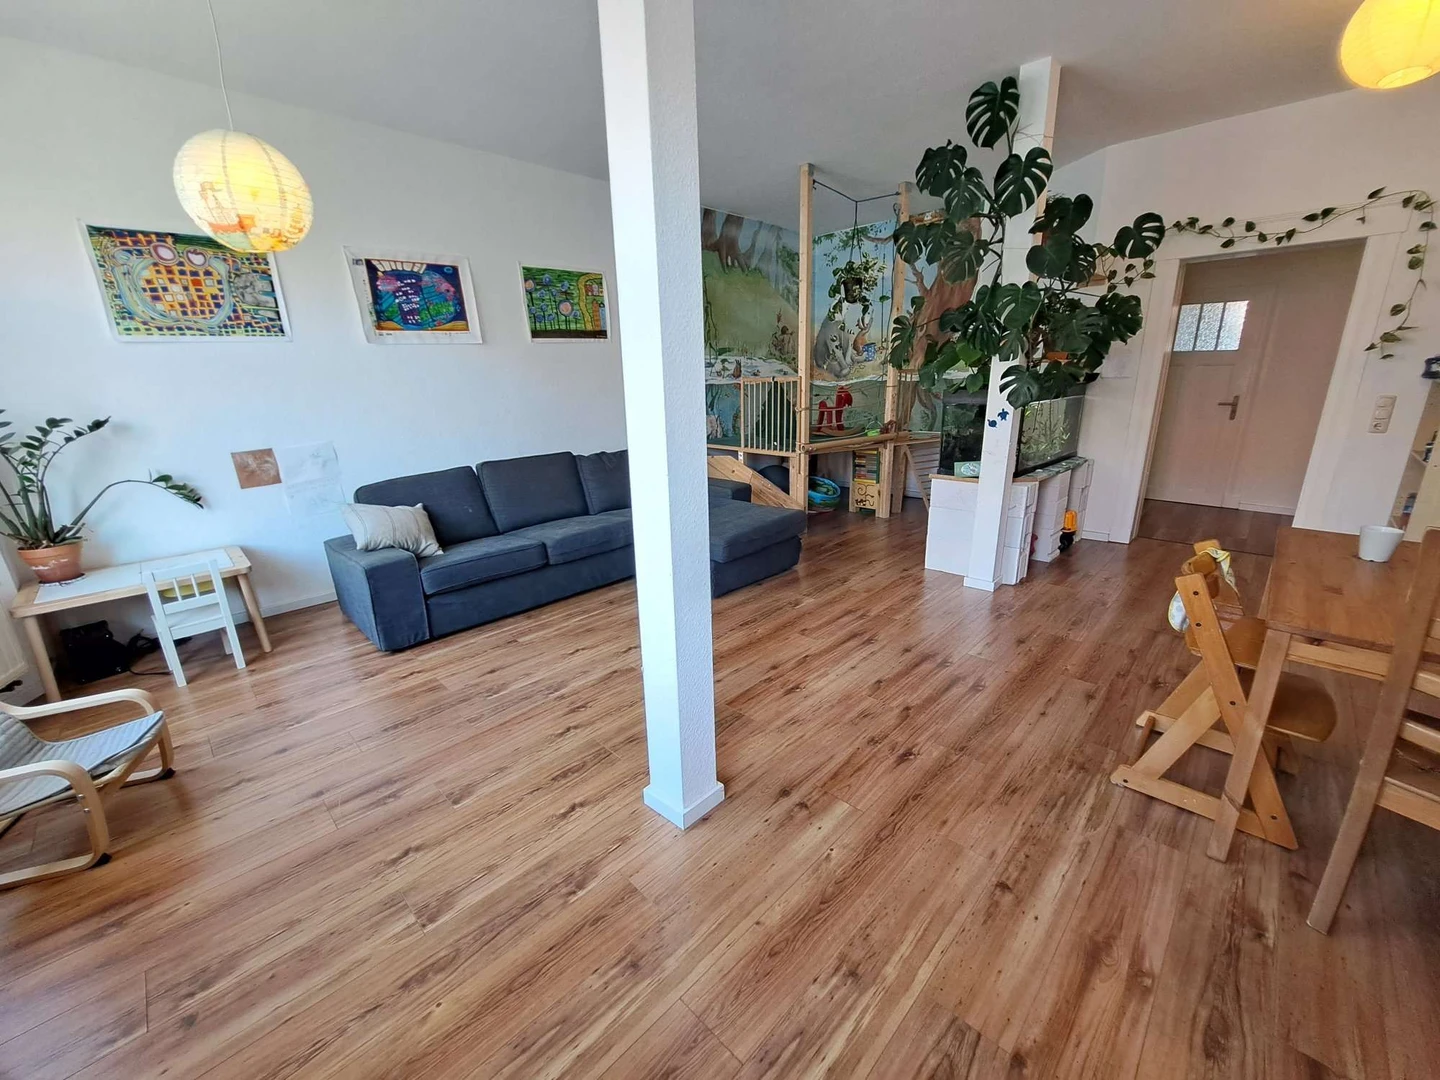 Alquiler de habitación en piso compartido en Leipzig